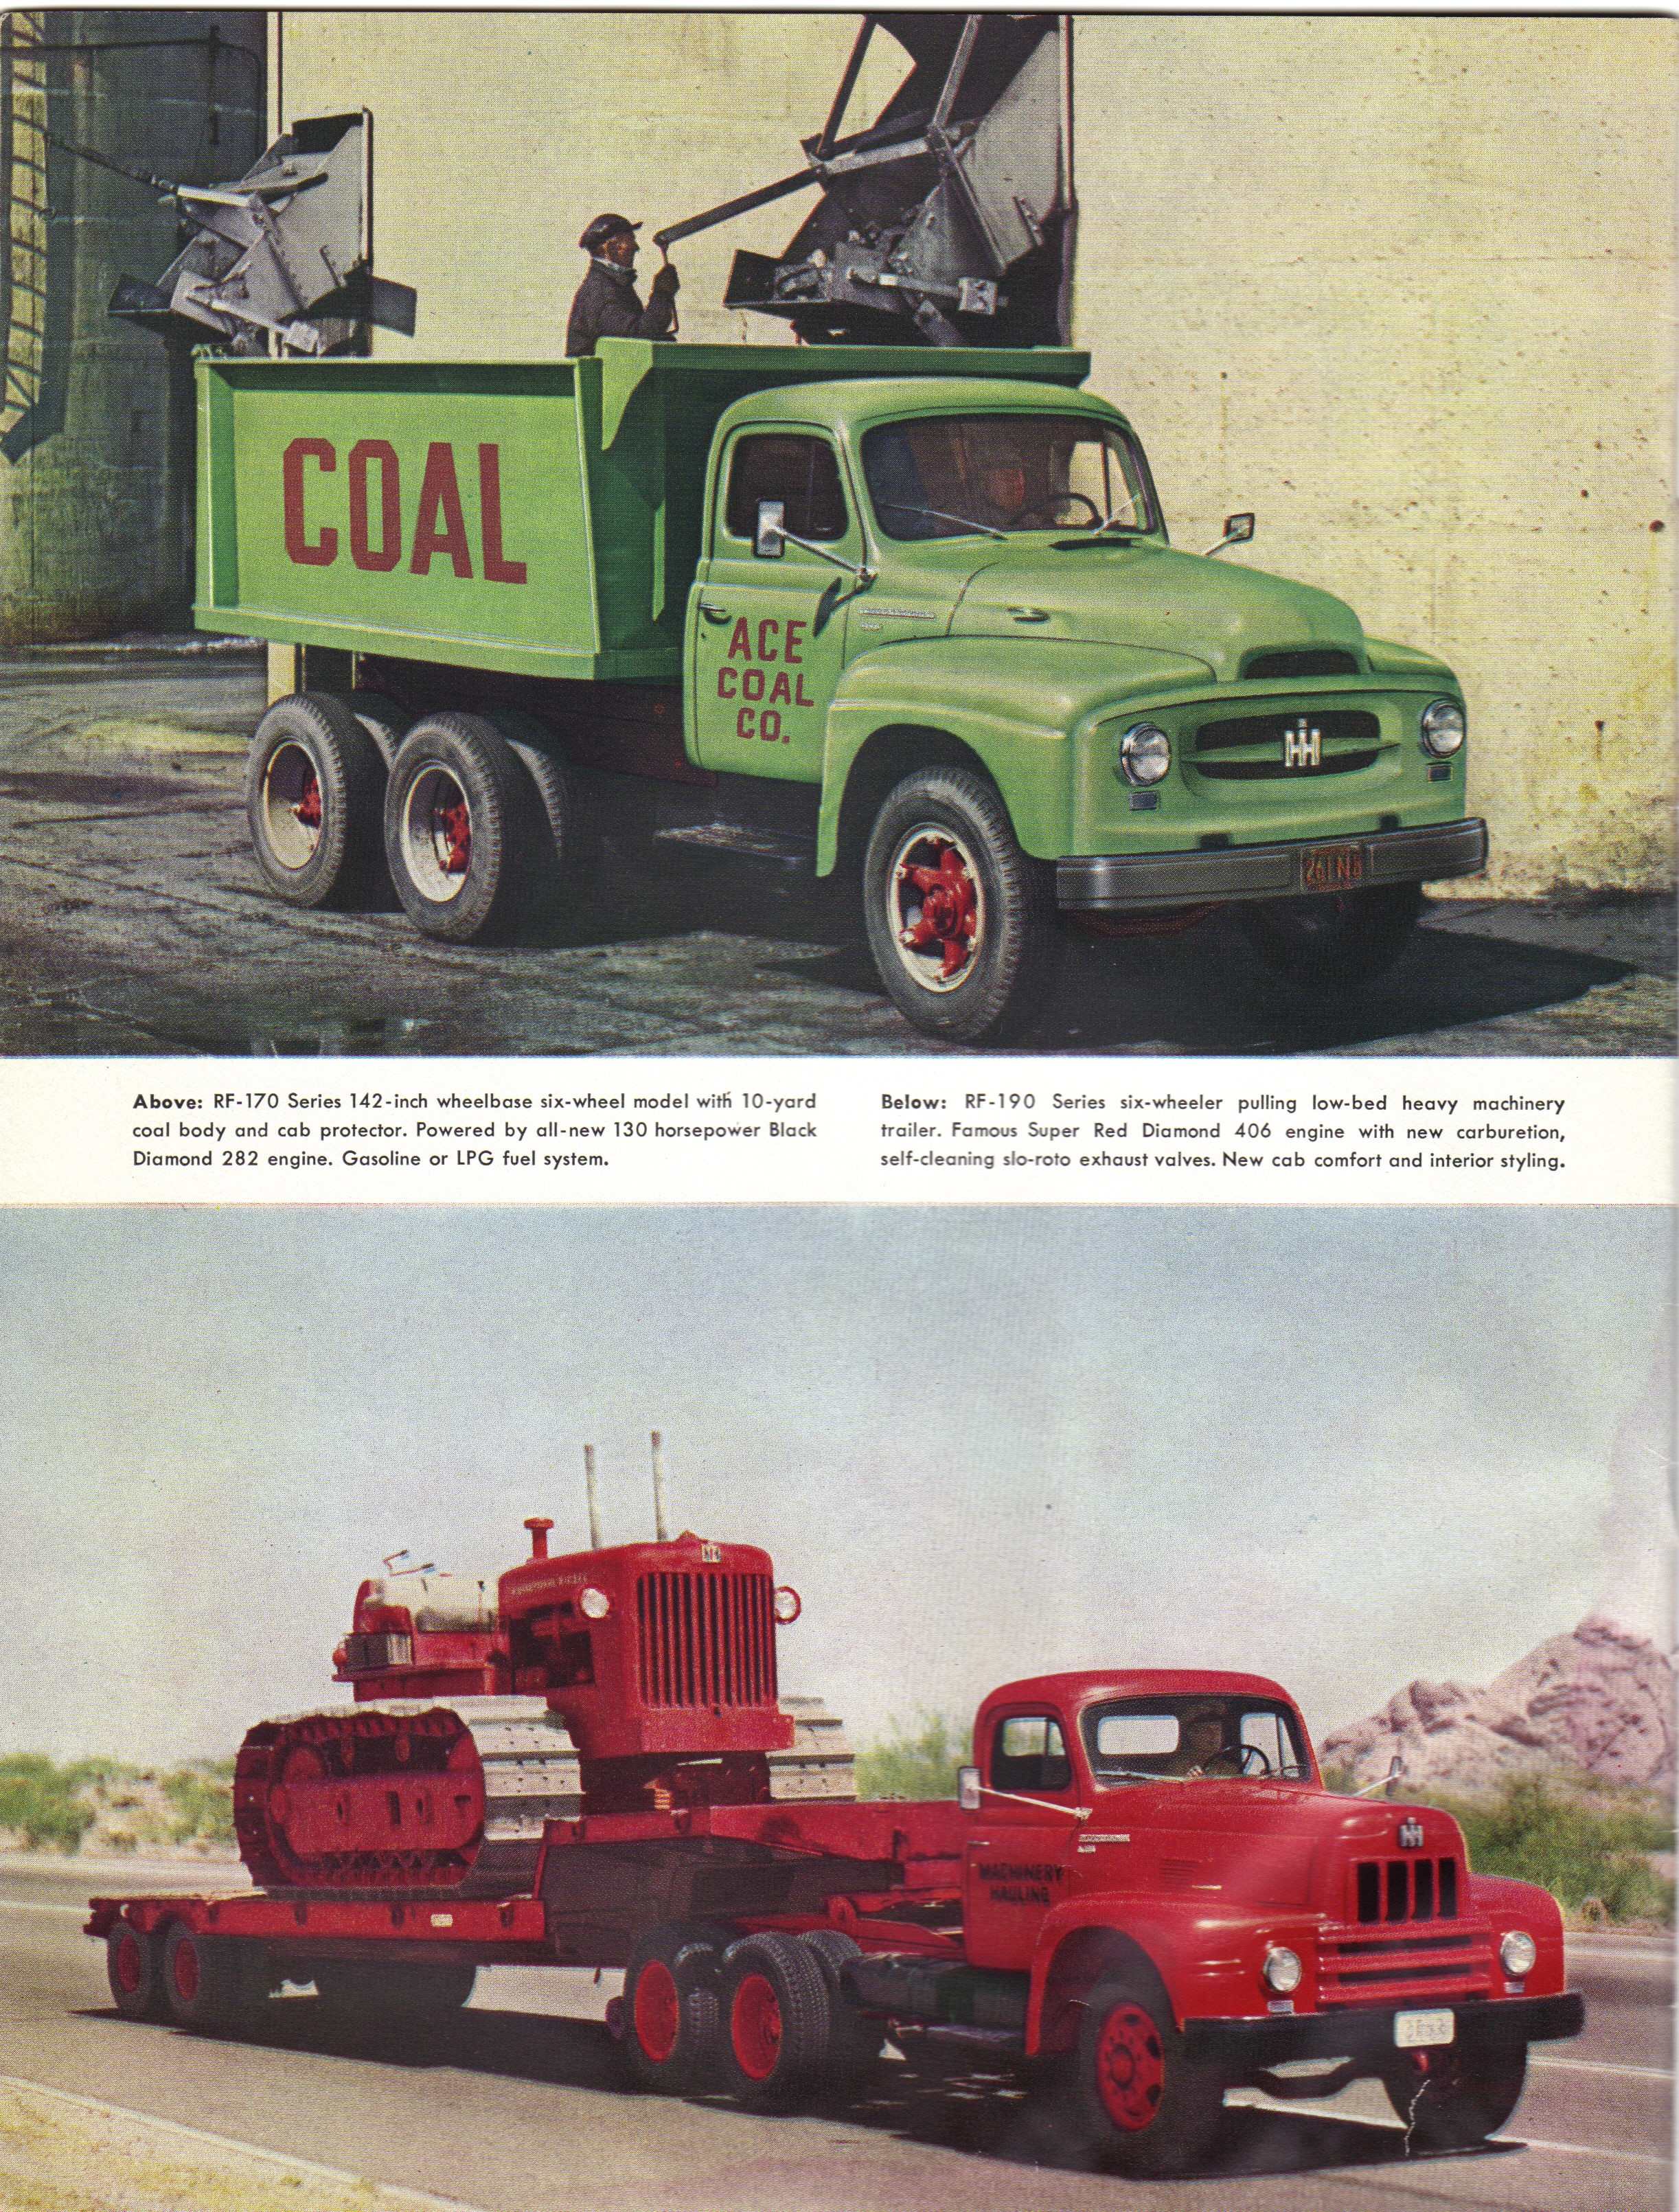 Brochure sur les camions à 6 Roues IHC International Série R des années 1950